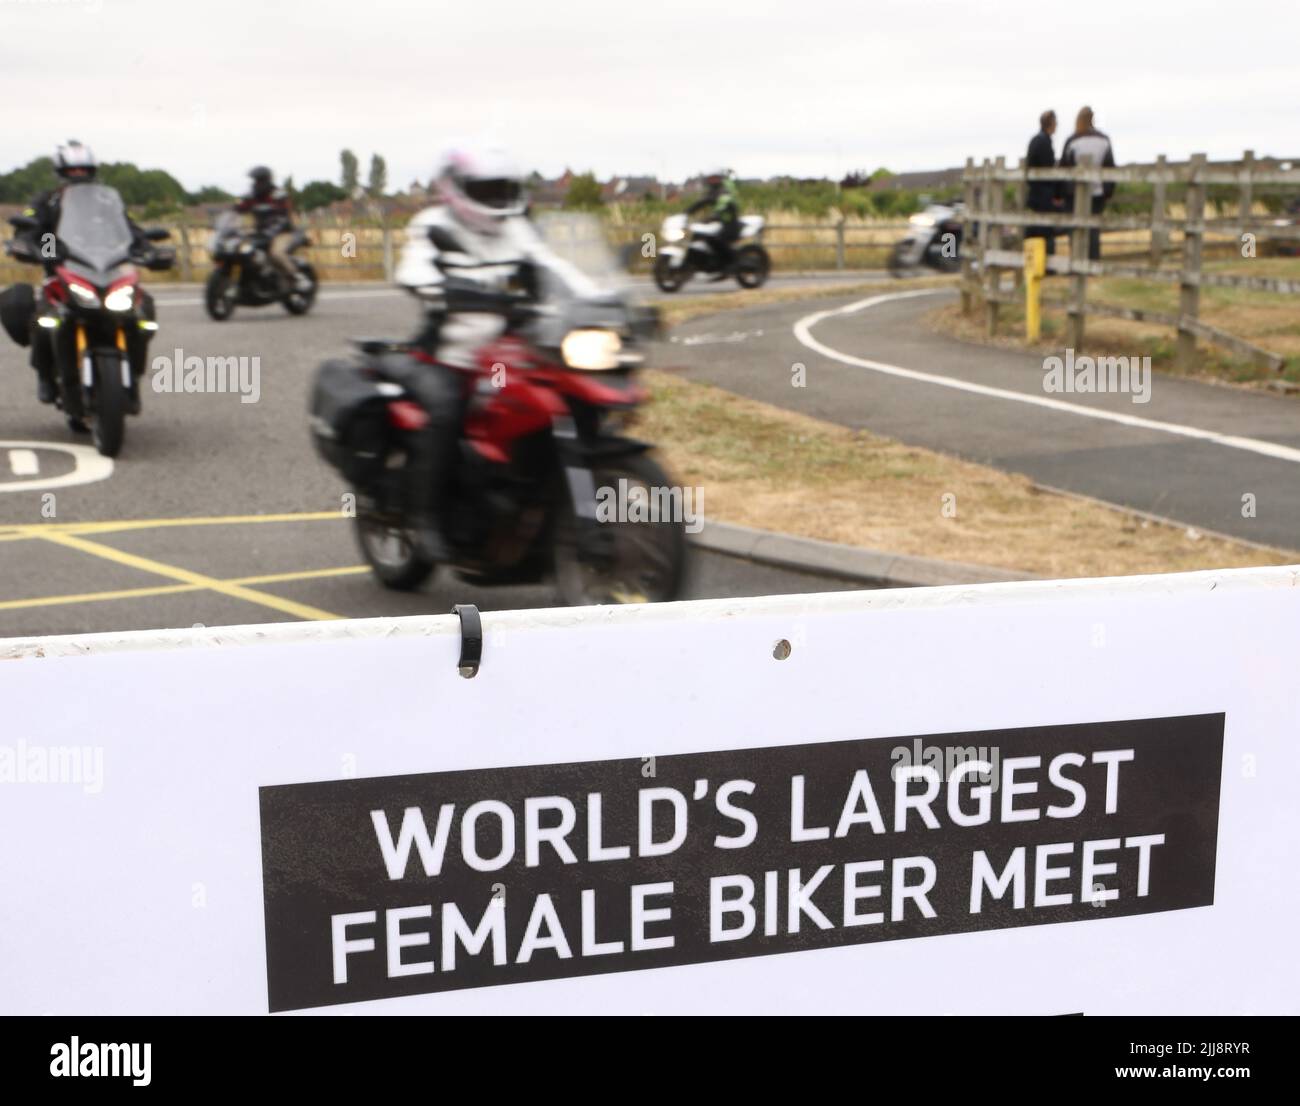 Hinckley, Leicestershire, Reino Unido. 24th de julio de 2022. Los pilotos llegan durante un intento de récord mundial para la motorista femenina más grande se reúnen en la sede global de Triumph Motorcycles. Crédito Darren Staples/Alamy Live News. Foto de stock